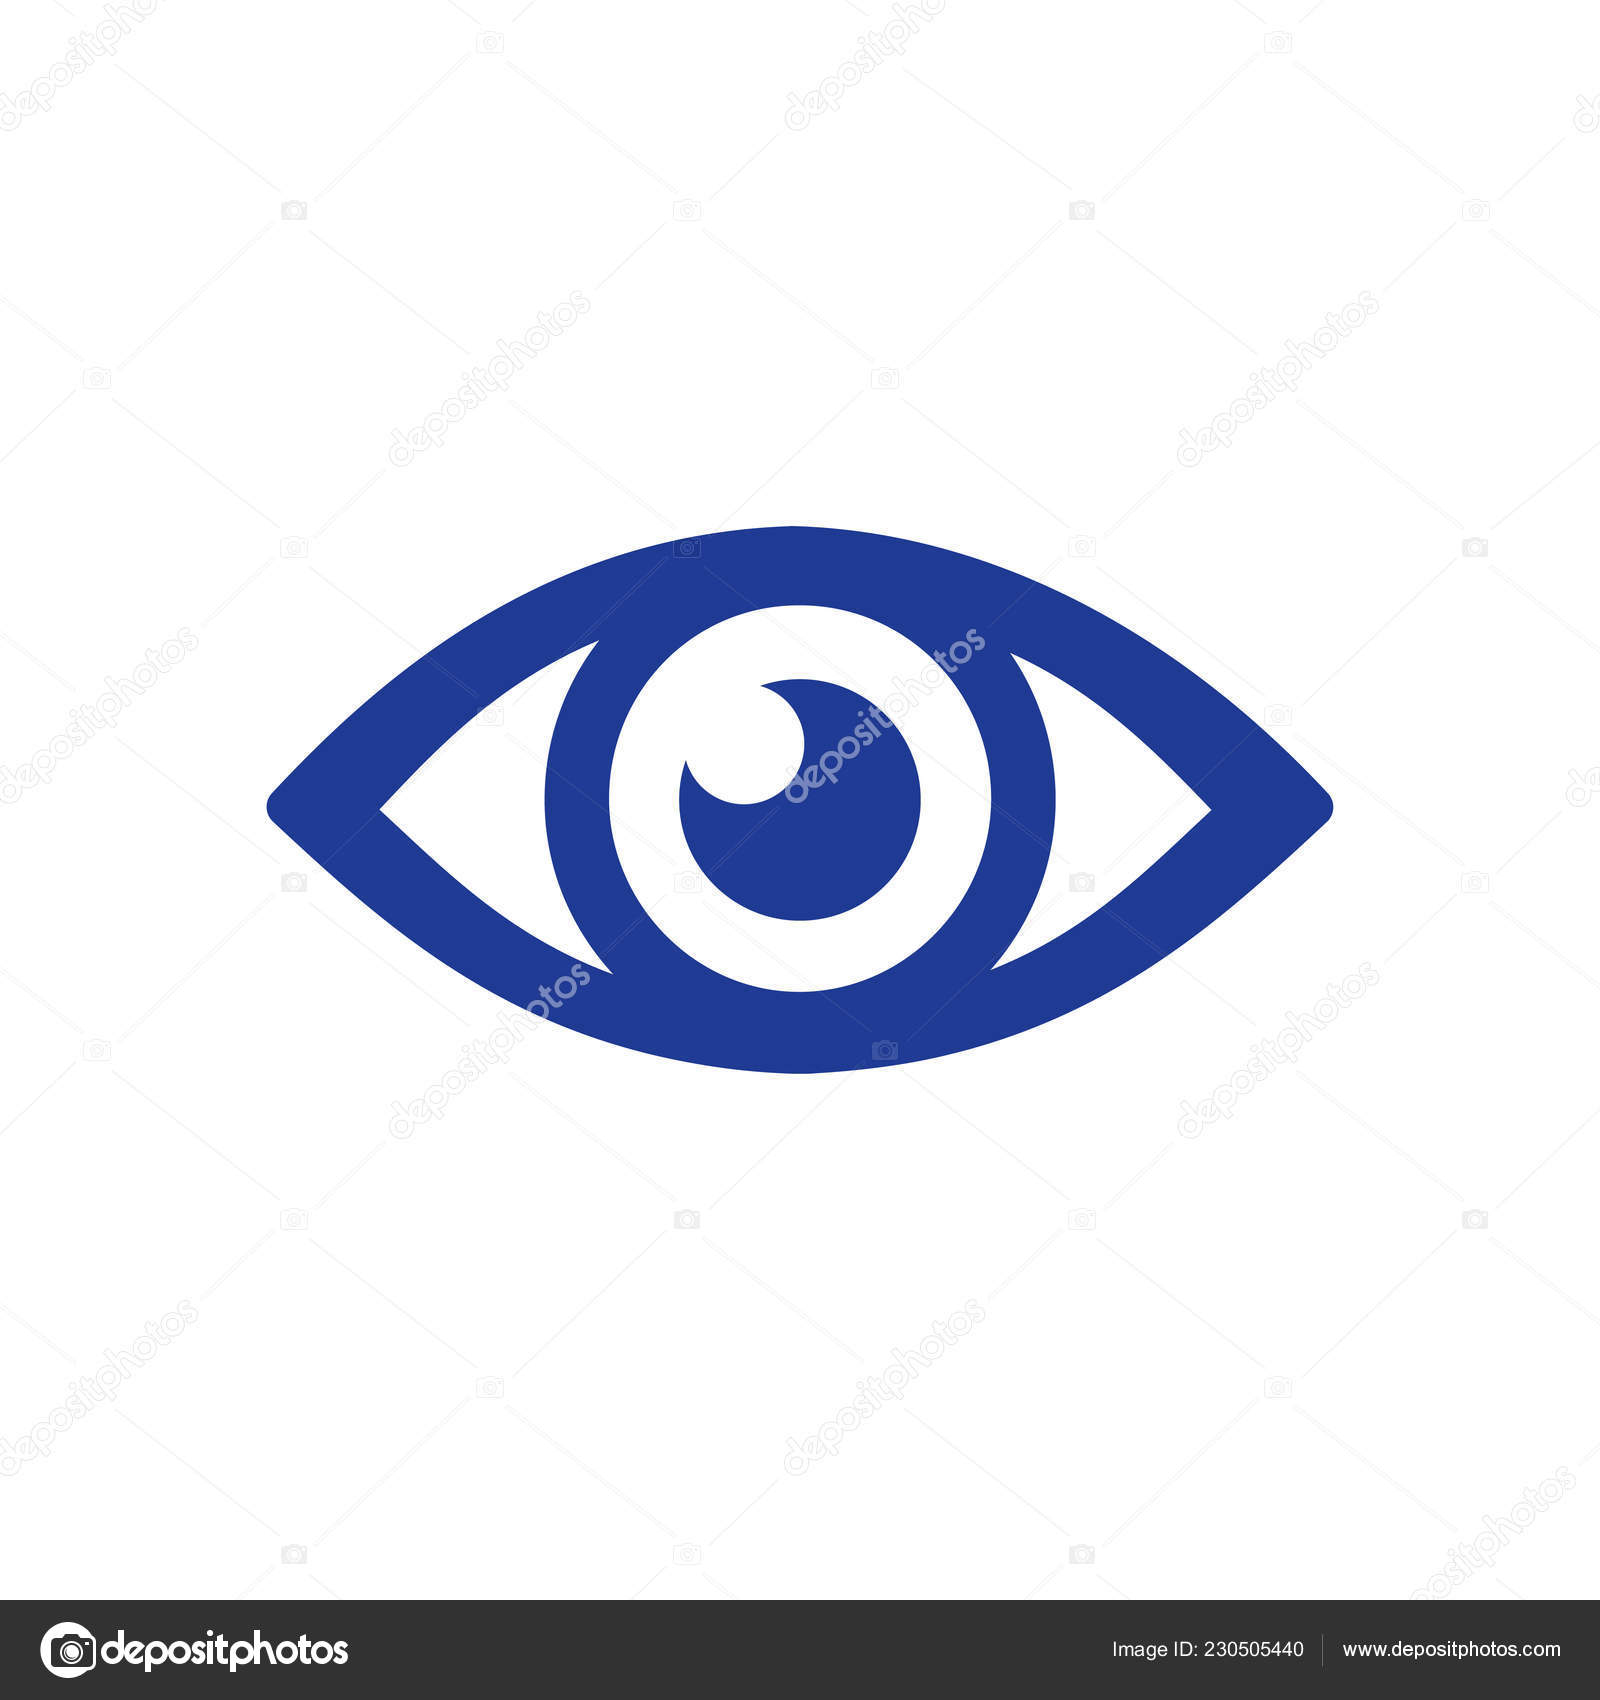 blue eye monitoring